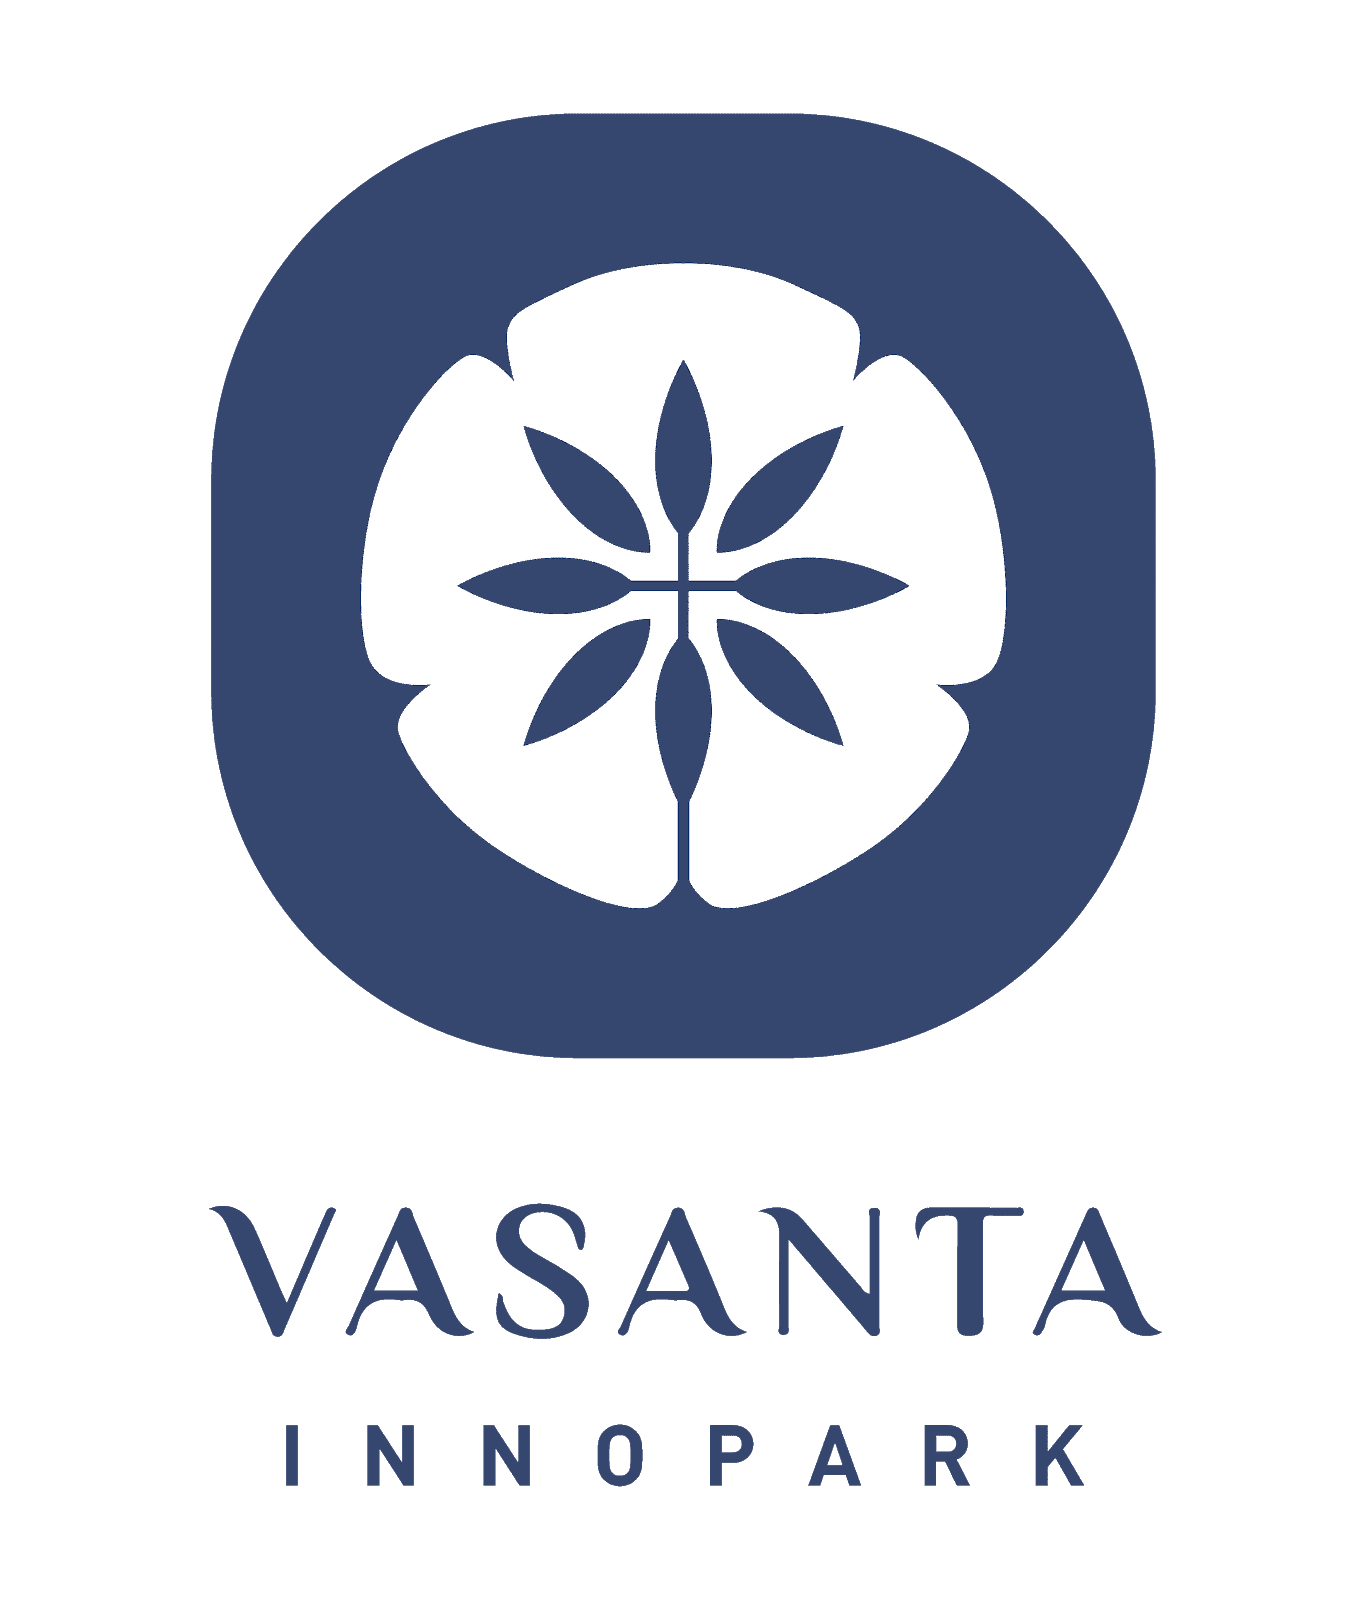 Vasanta Innopark | Pusat Kota Wisata dan Belanja Jepang Pertama di Indonesia